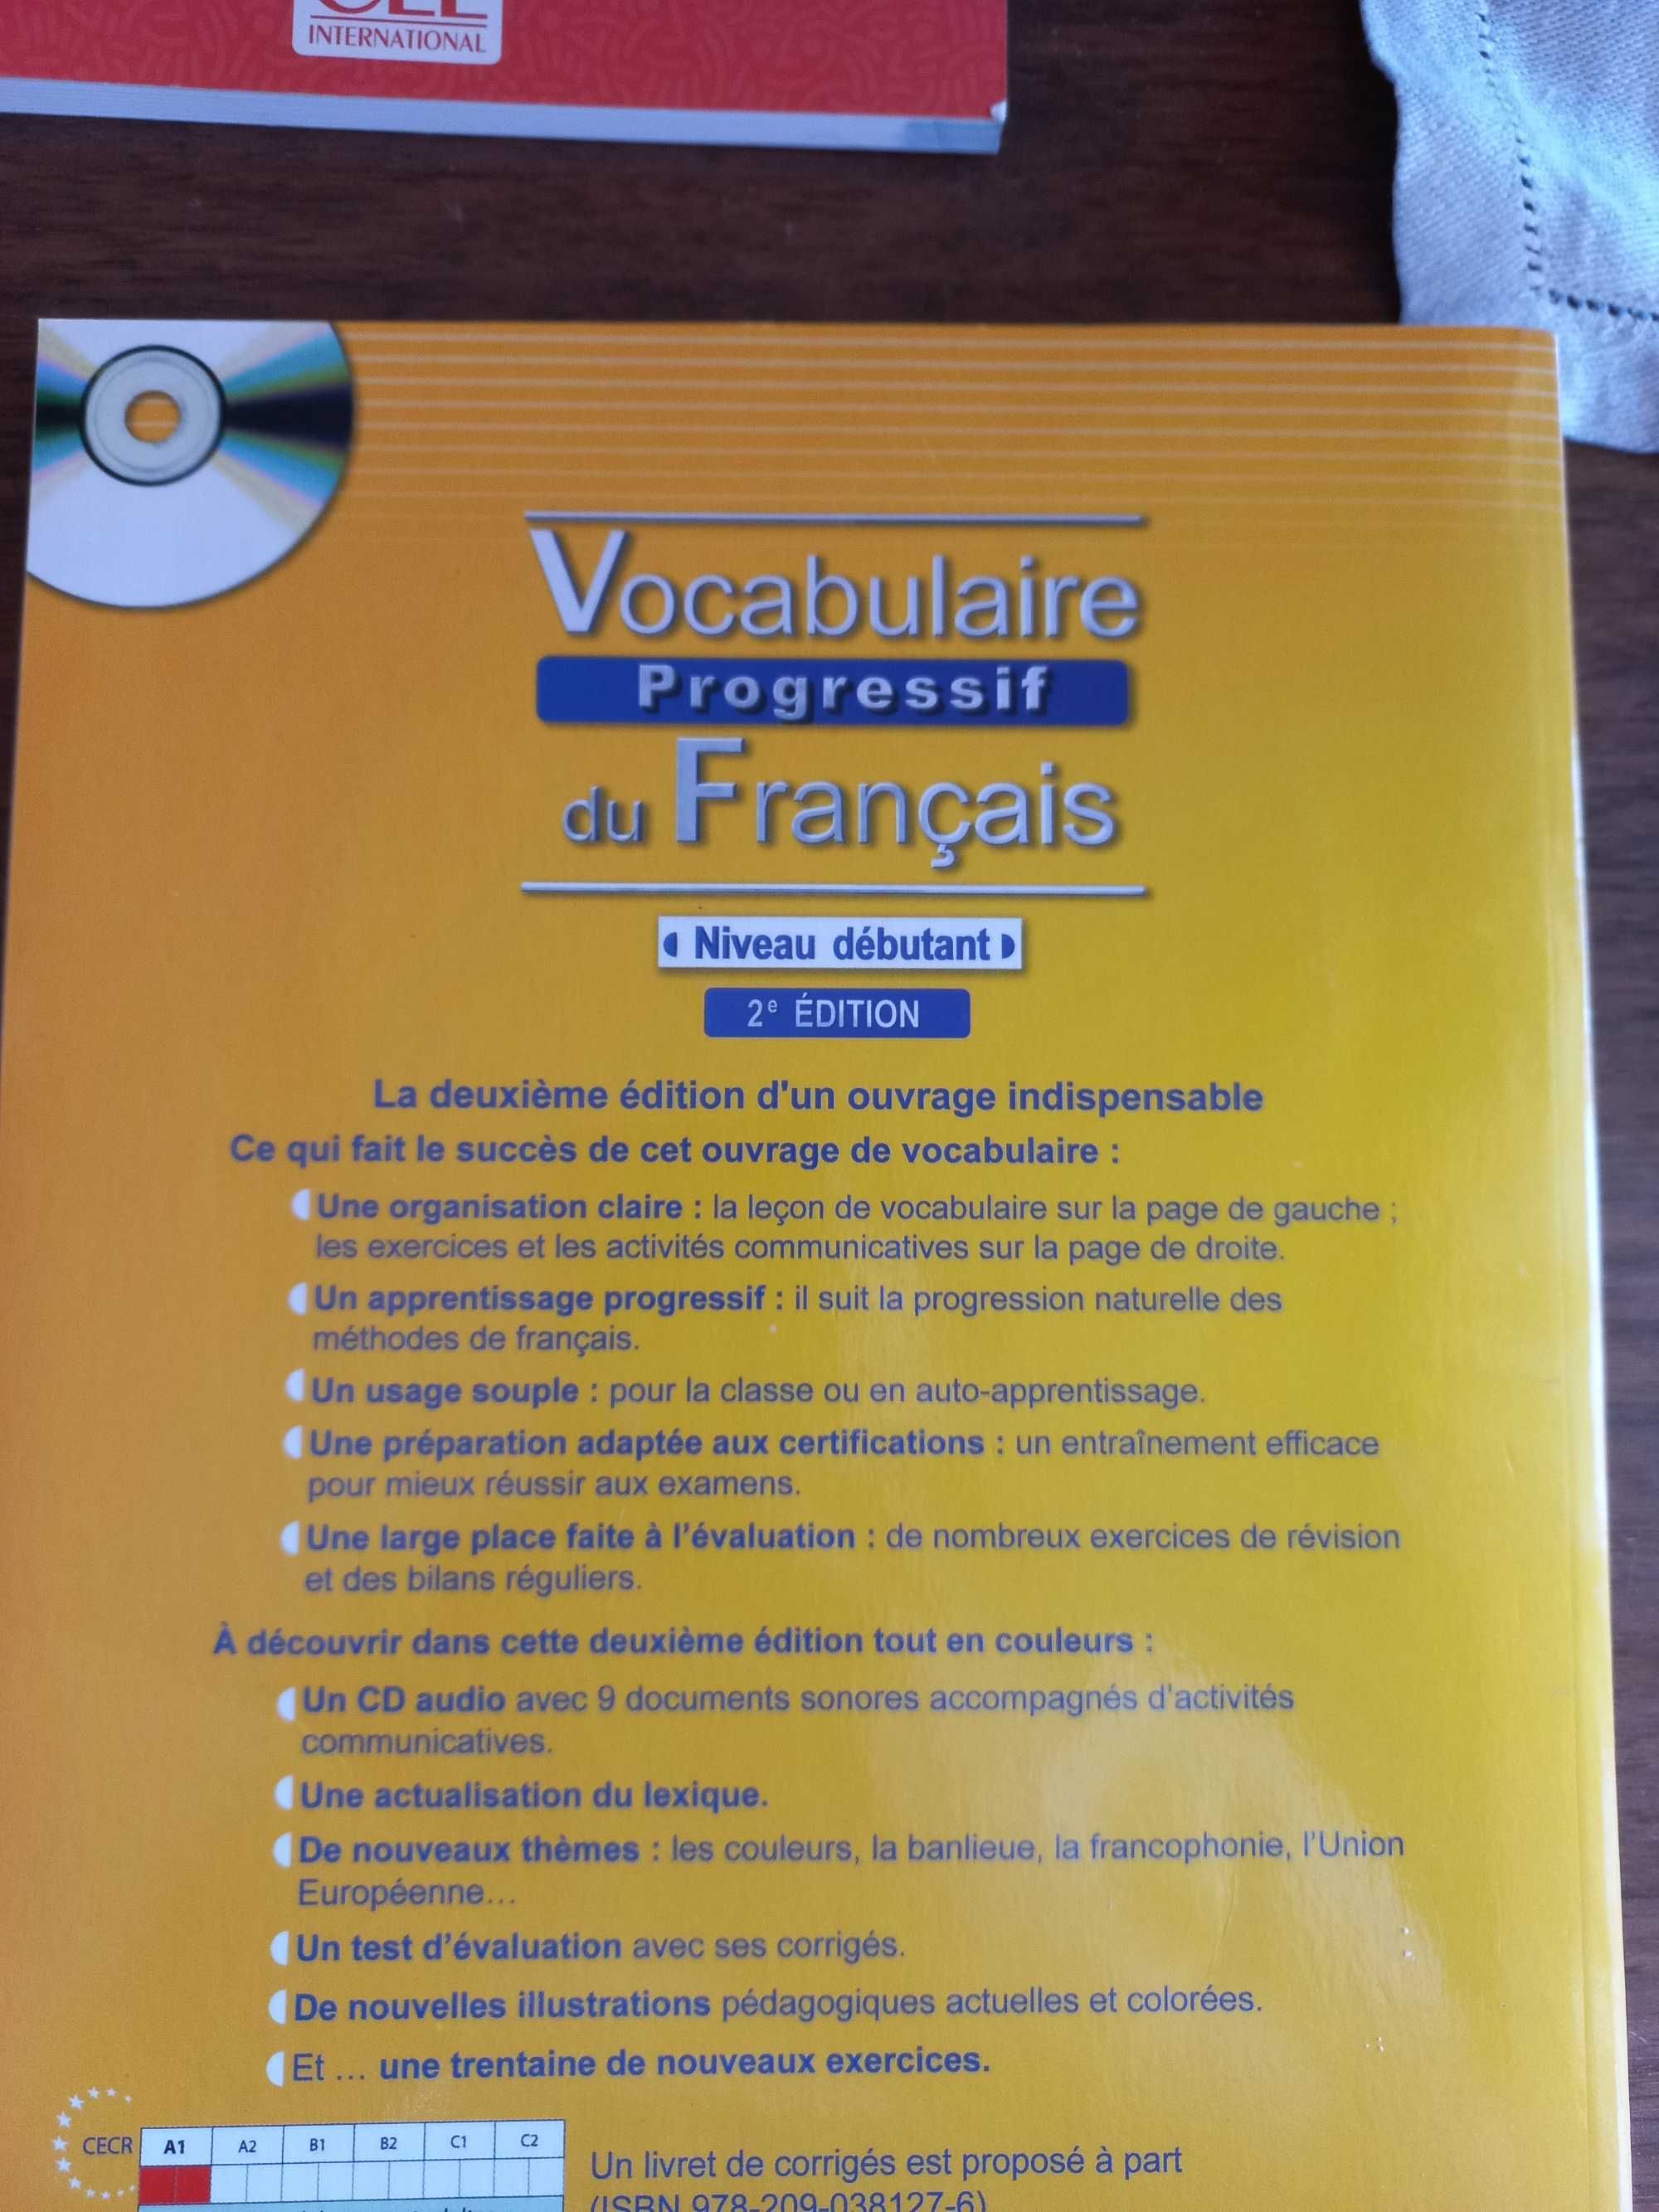 Сборник упражнений по французскому языку с упором на лексику